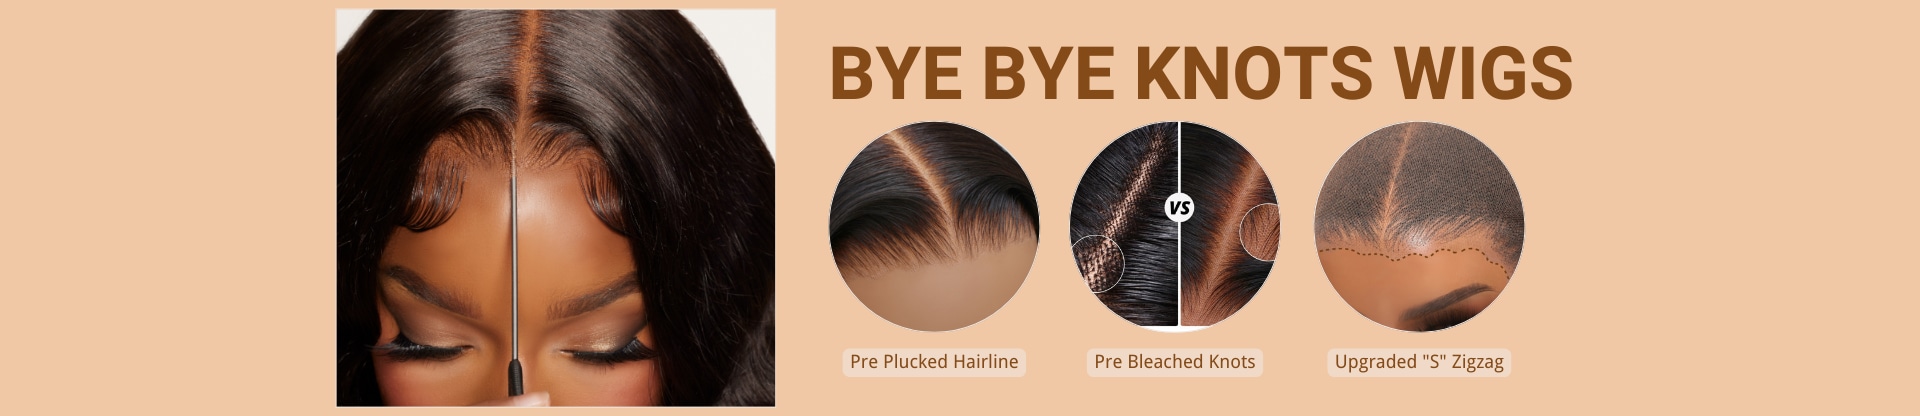 Bye Bye Knots Wigs